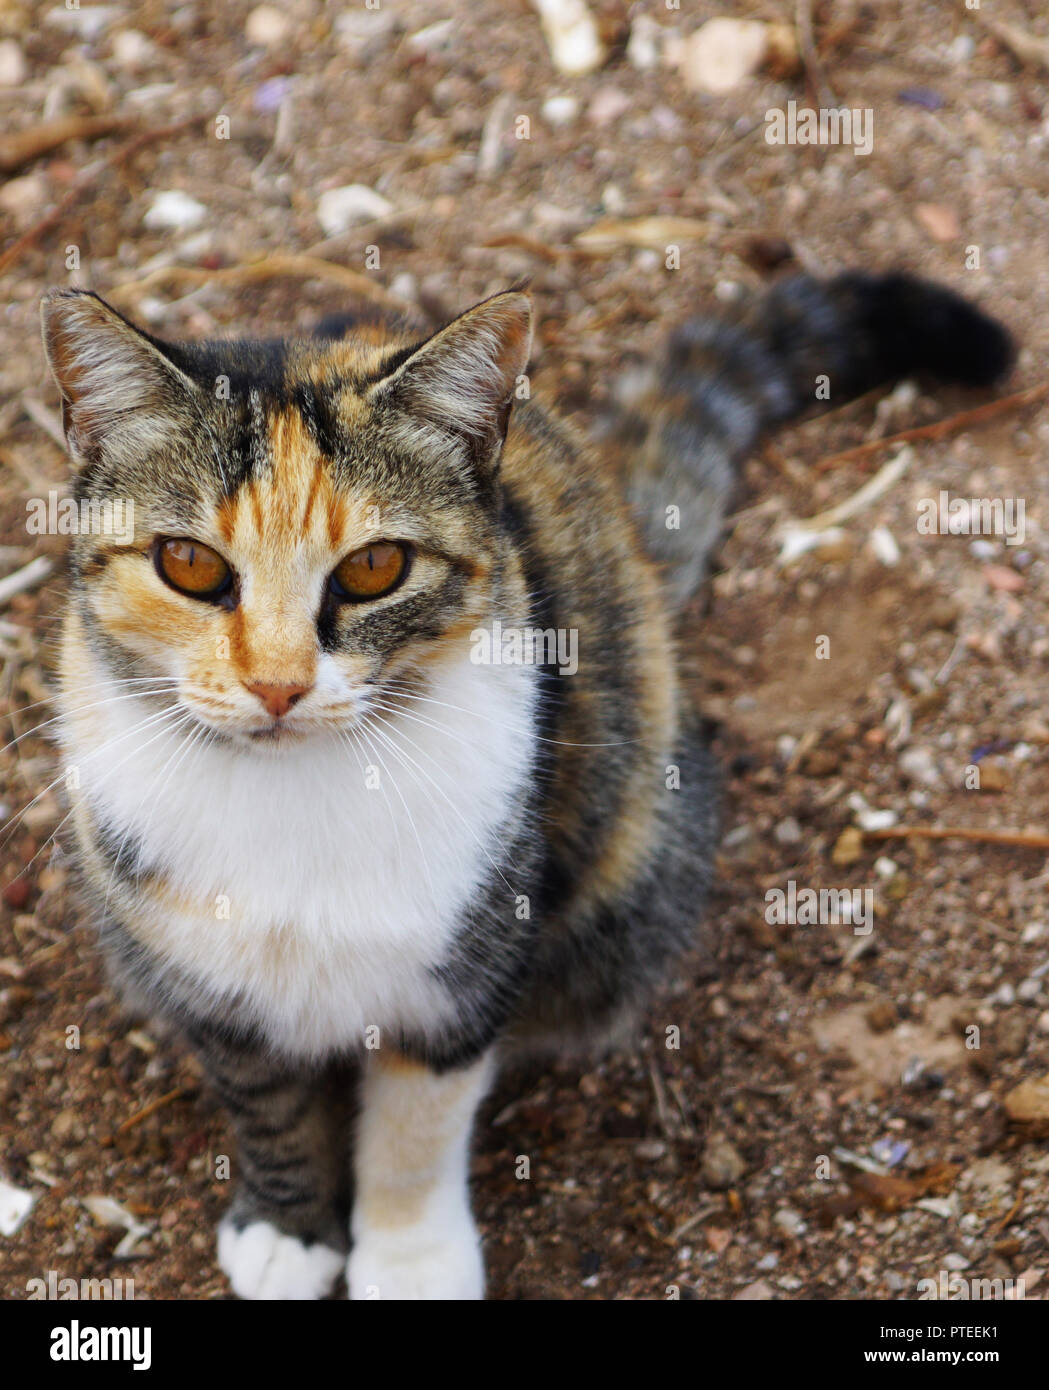 Katze mit ungewöhnlichen braune Augen sitzt auf dem Boden Stockfotografie -  Alamy